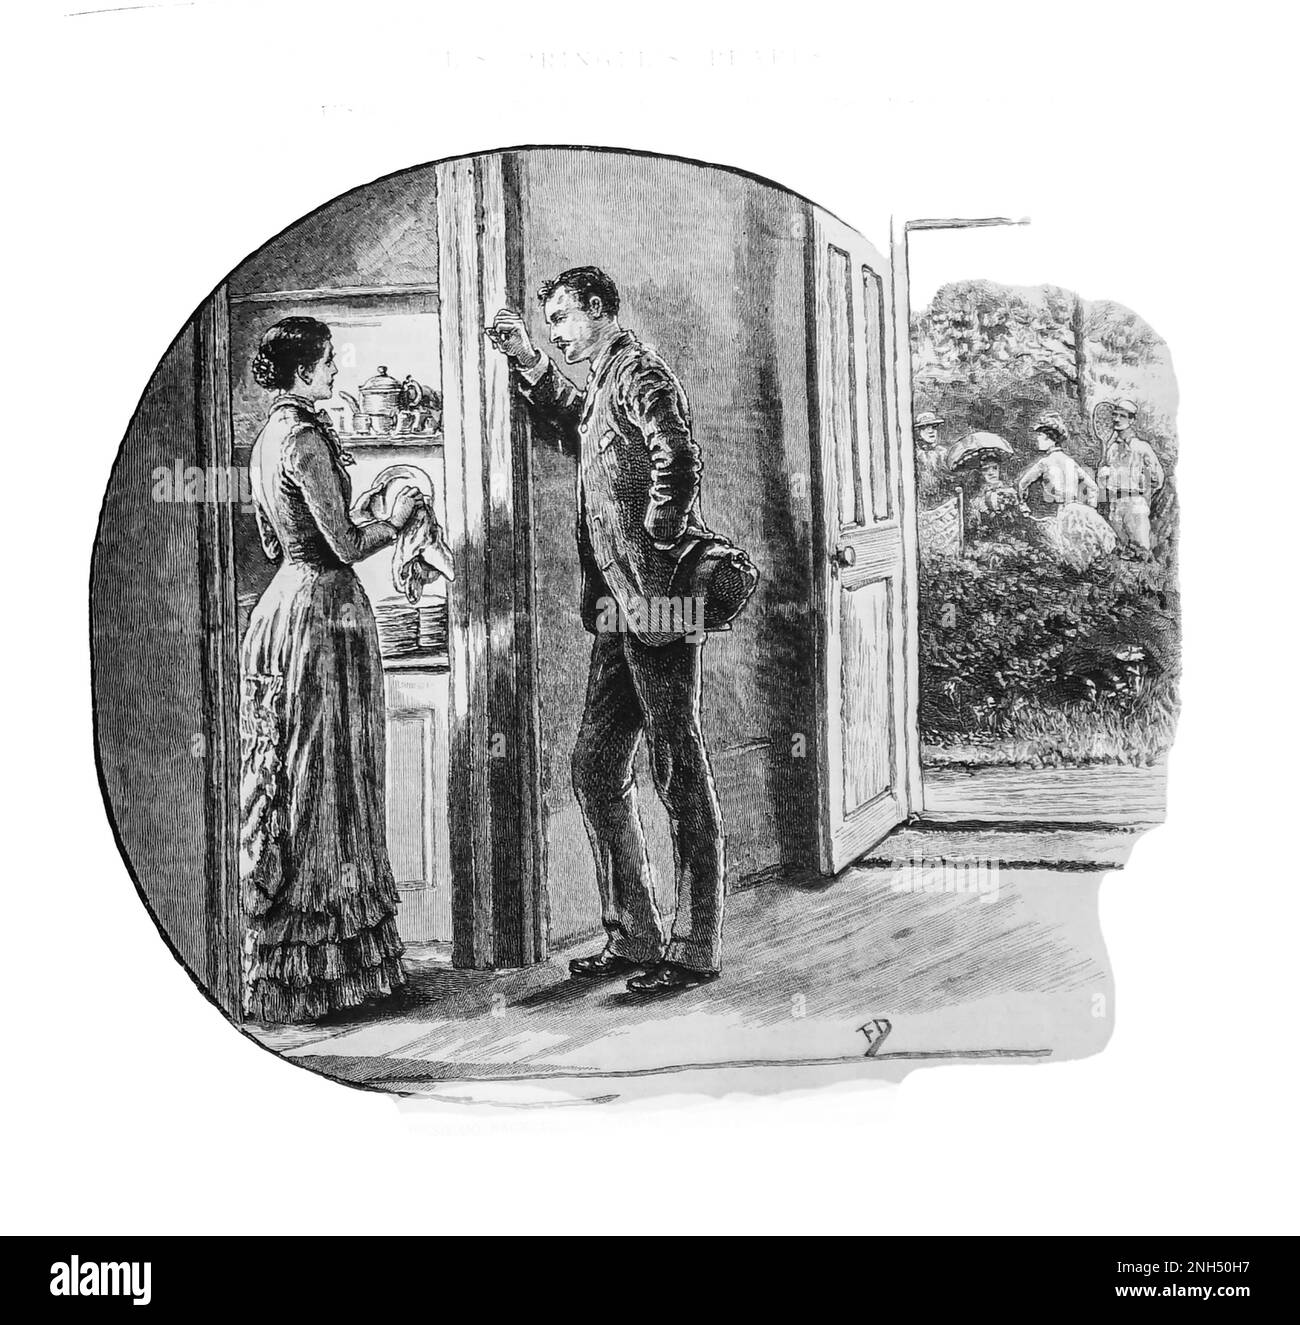 Eine Skizze aus dem 19. Jahrhundert von einem Paar, sie trocknet Geschirr in der Küche, er lehnt sich an die Tür, in einer intensiven Unterhaltung, aus der Girls Own Paper von 1888. Stockfoto